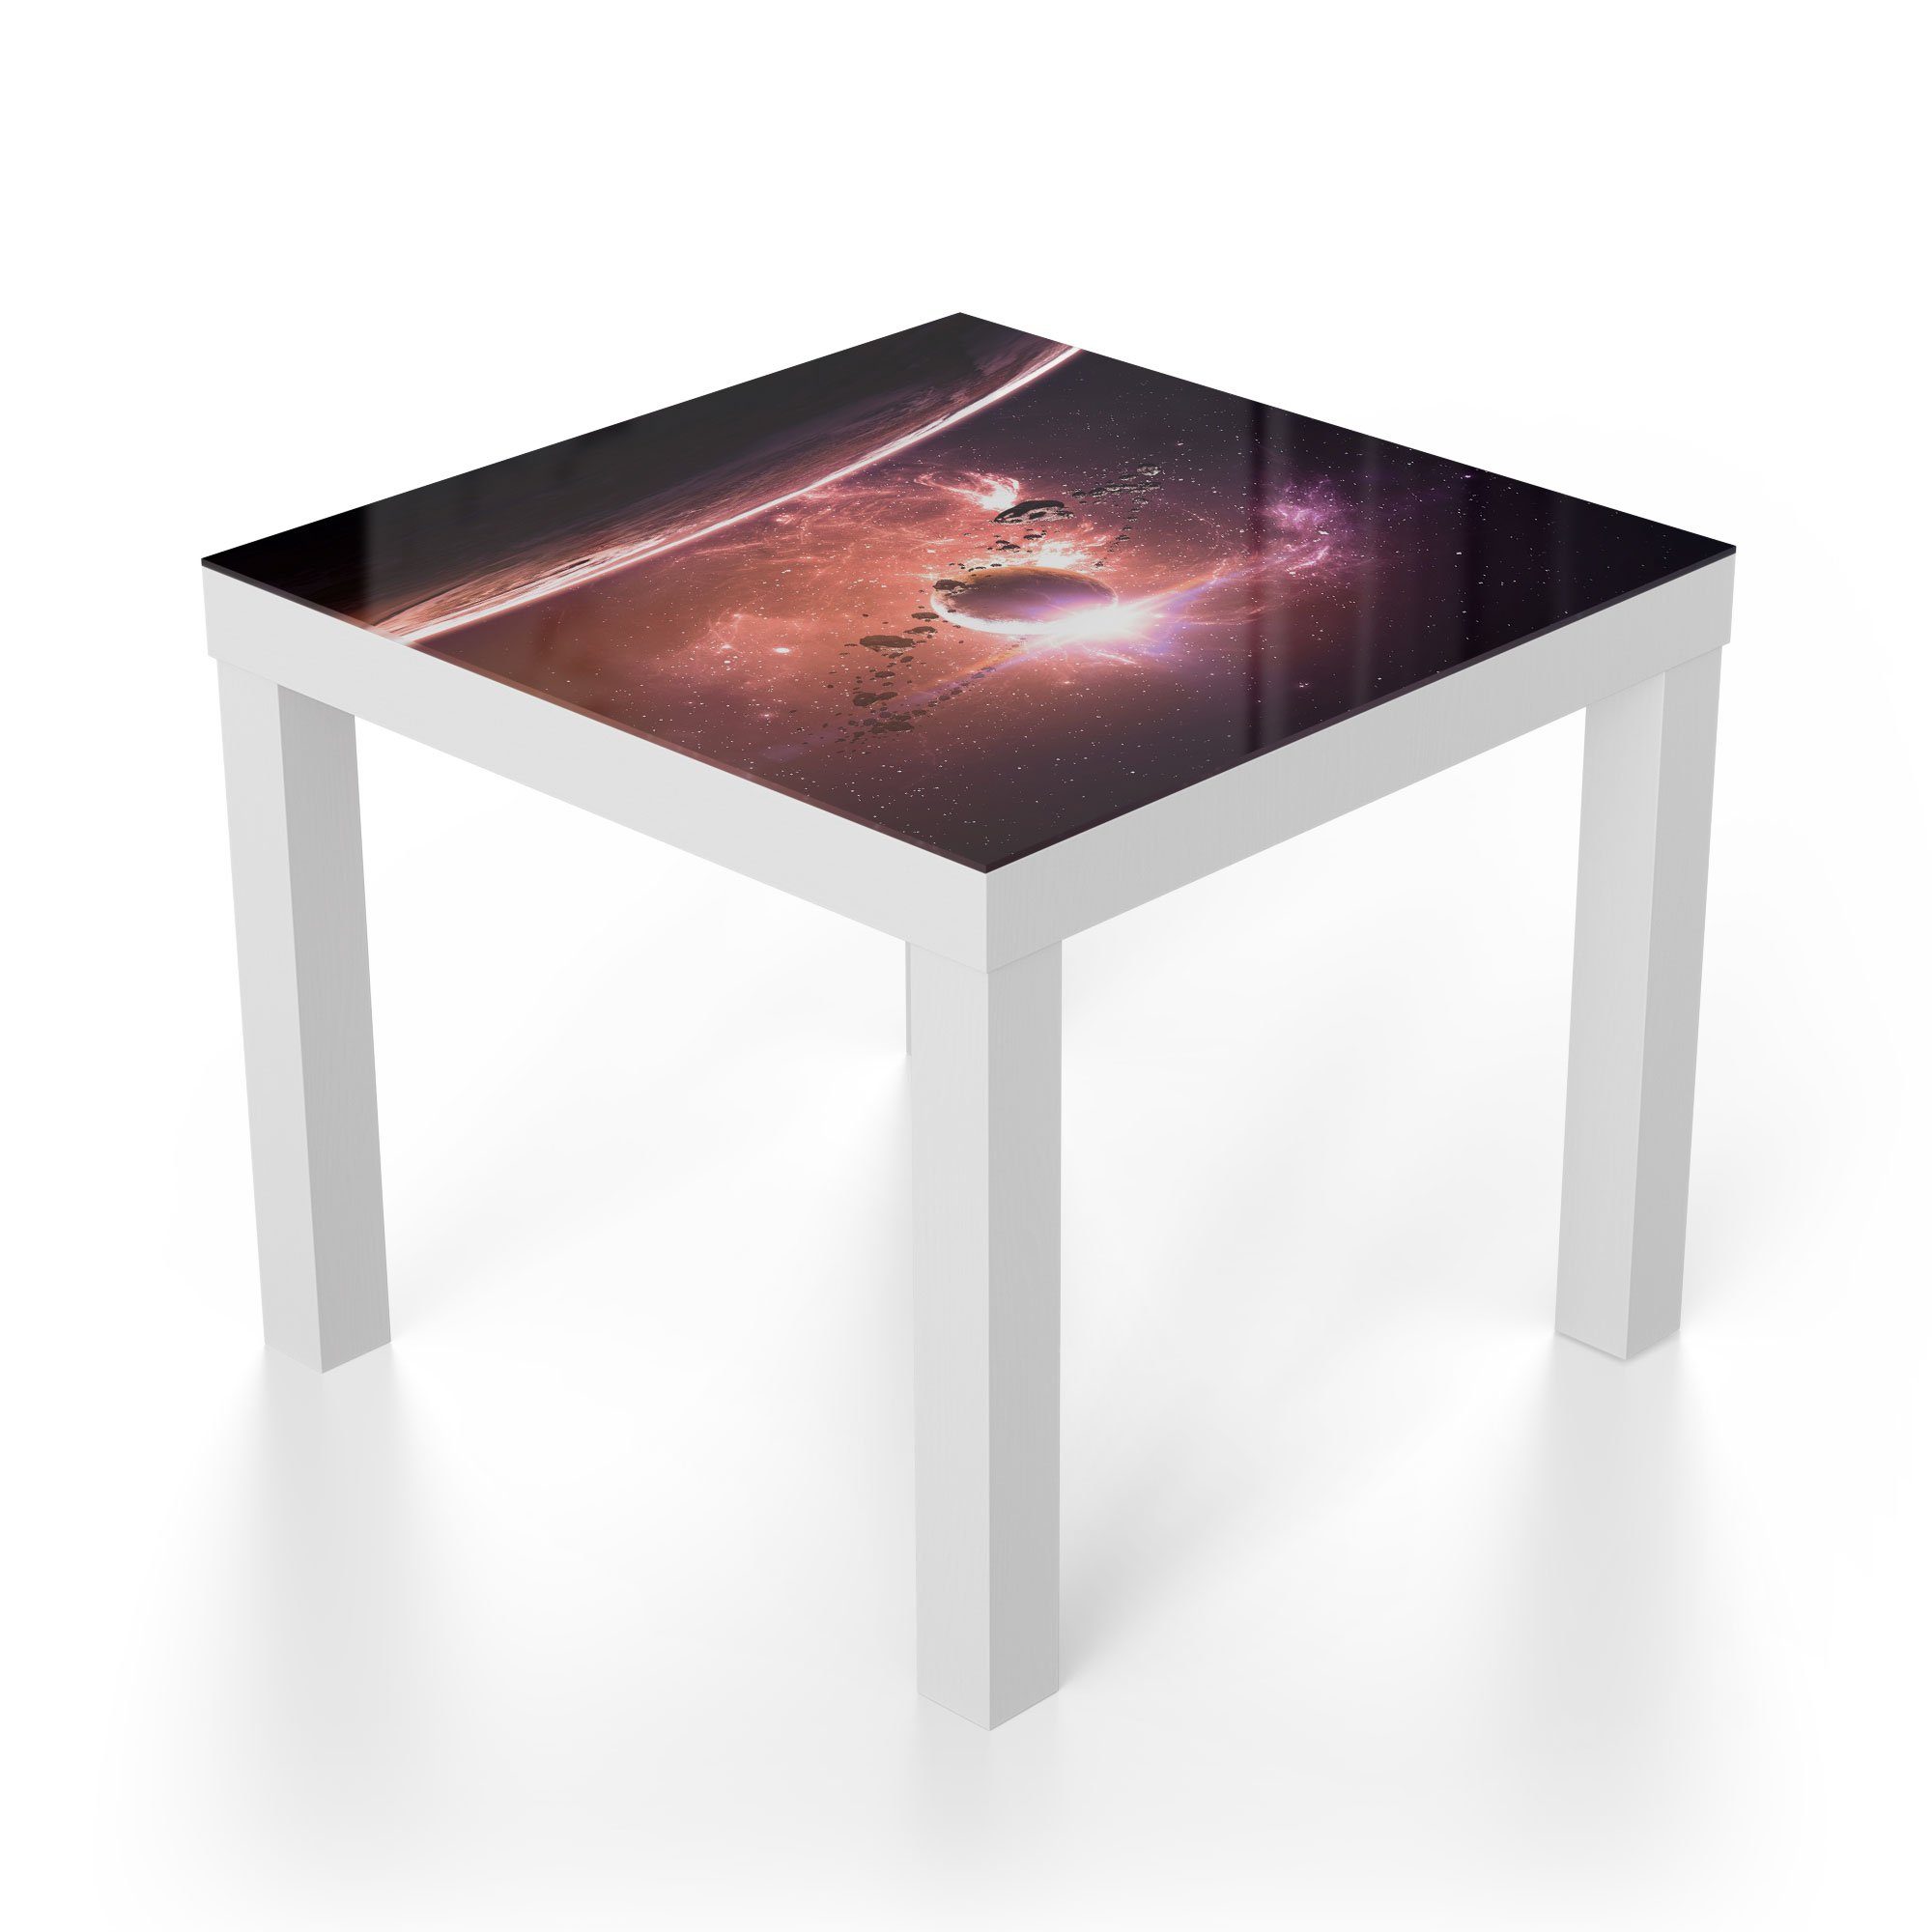 'Galaktische modern Couchtisch Fantasiewelt', Weiß Glas Glastisch DEQORI Beistelltisch